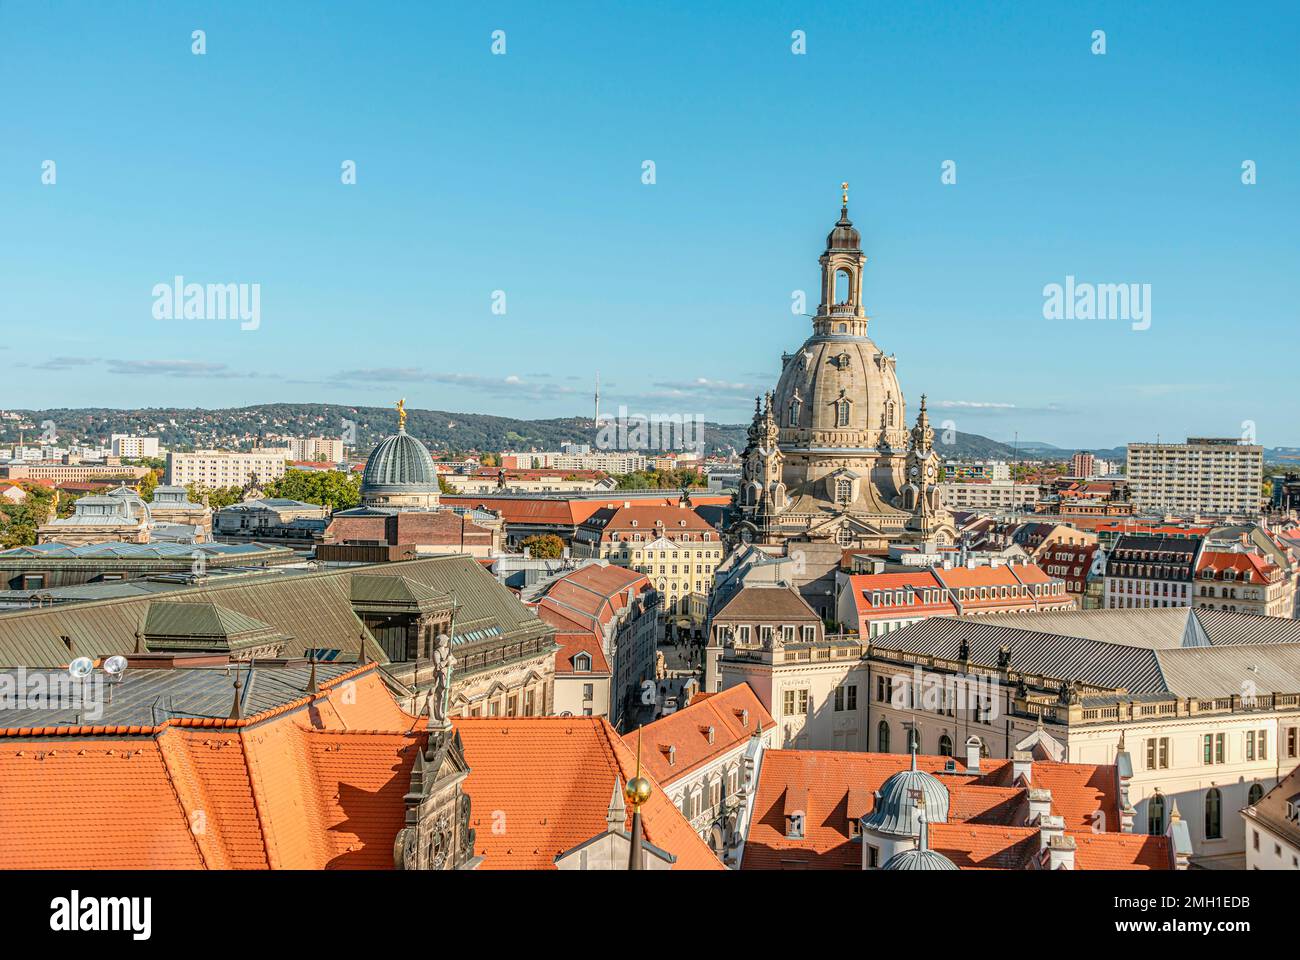 Vue sur le toit de la vieille ville de Dresde, Saxe, Allemagne, vue depuis la plate-forme d'observation du château de Dresde. Banque D'Images